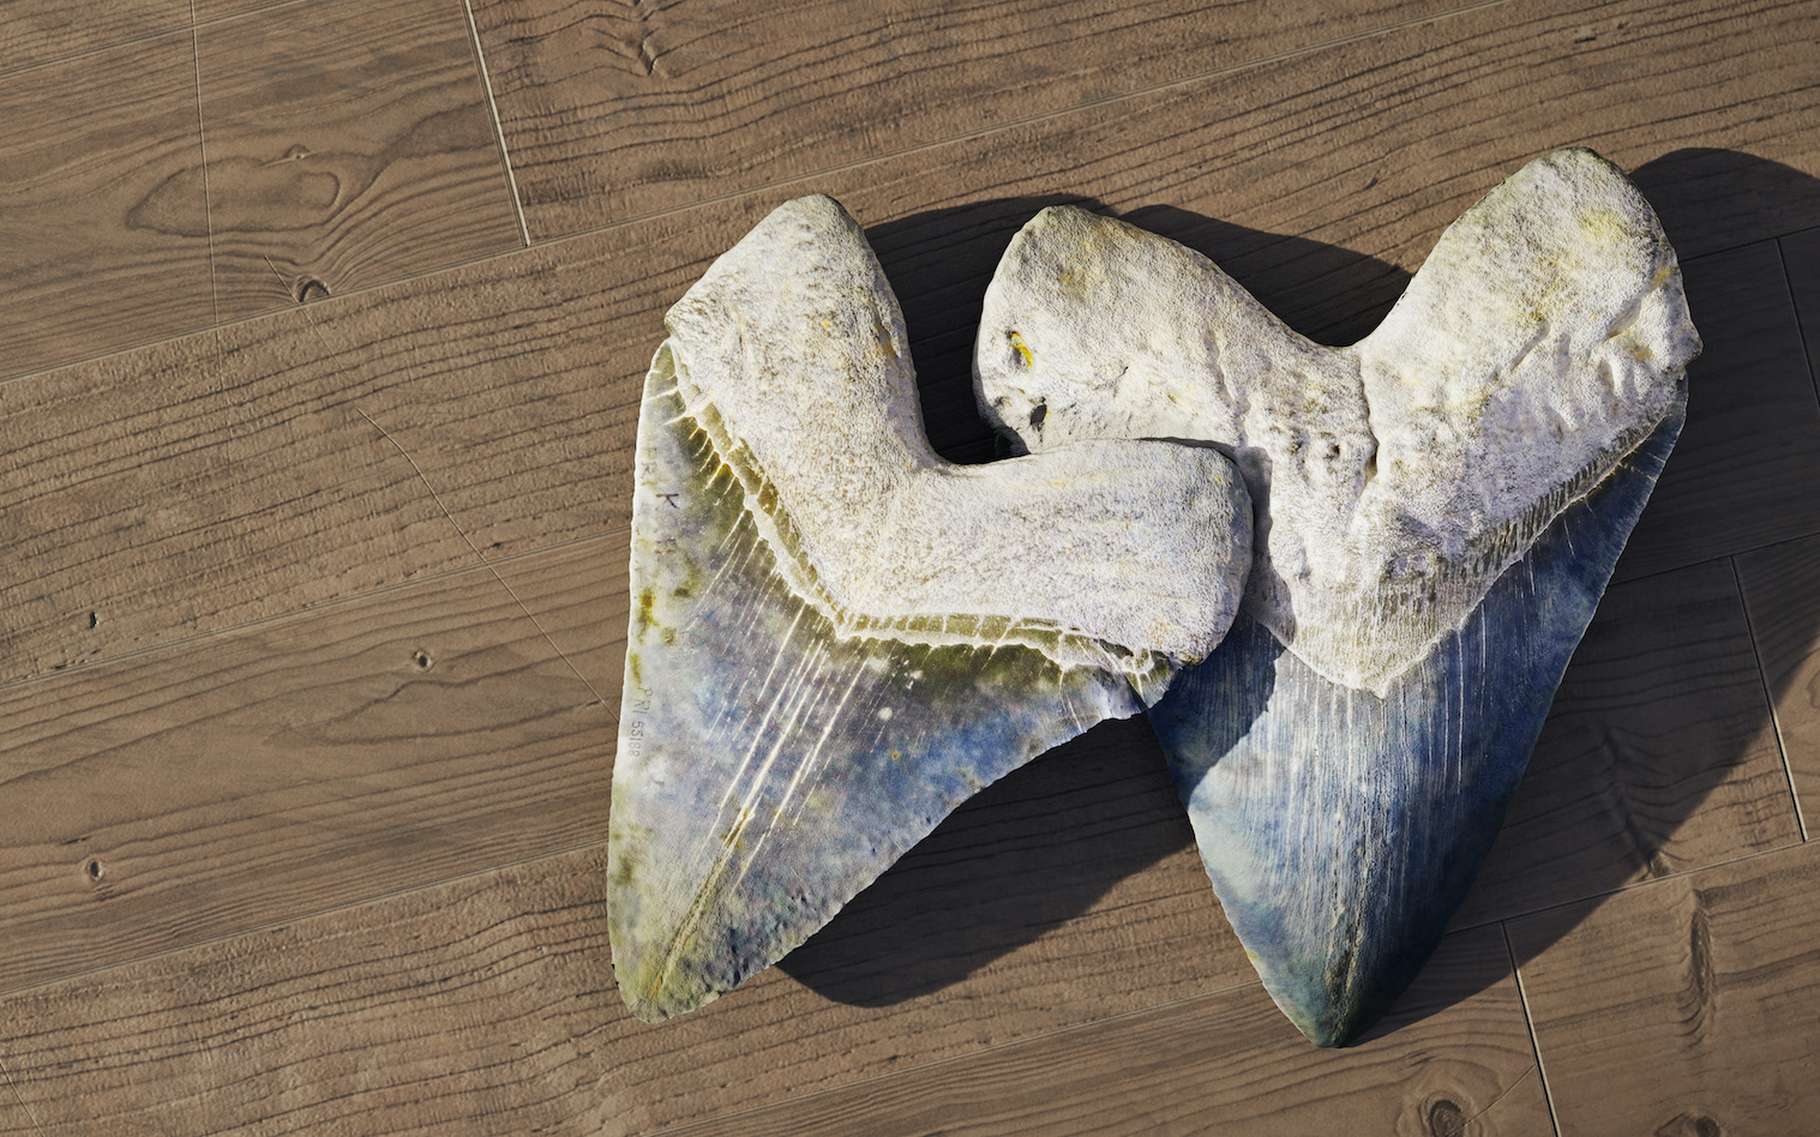 Les mégalodons sont surtout connus par les dents – et les vertèbres – fossiles que les chercheurs ont retrouvées un peu partout dans le monde. Aujourd’hui, ils affirment que la taille de ce requin de la préhistoire variait en fonction de la température de l’eau dans laquelle il évoluait. © dottedyeti, Adobe Stock